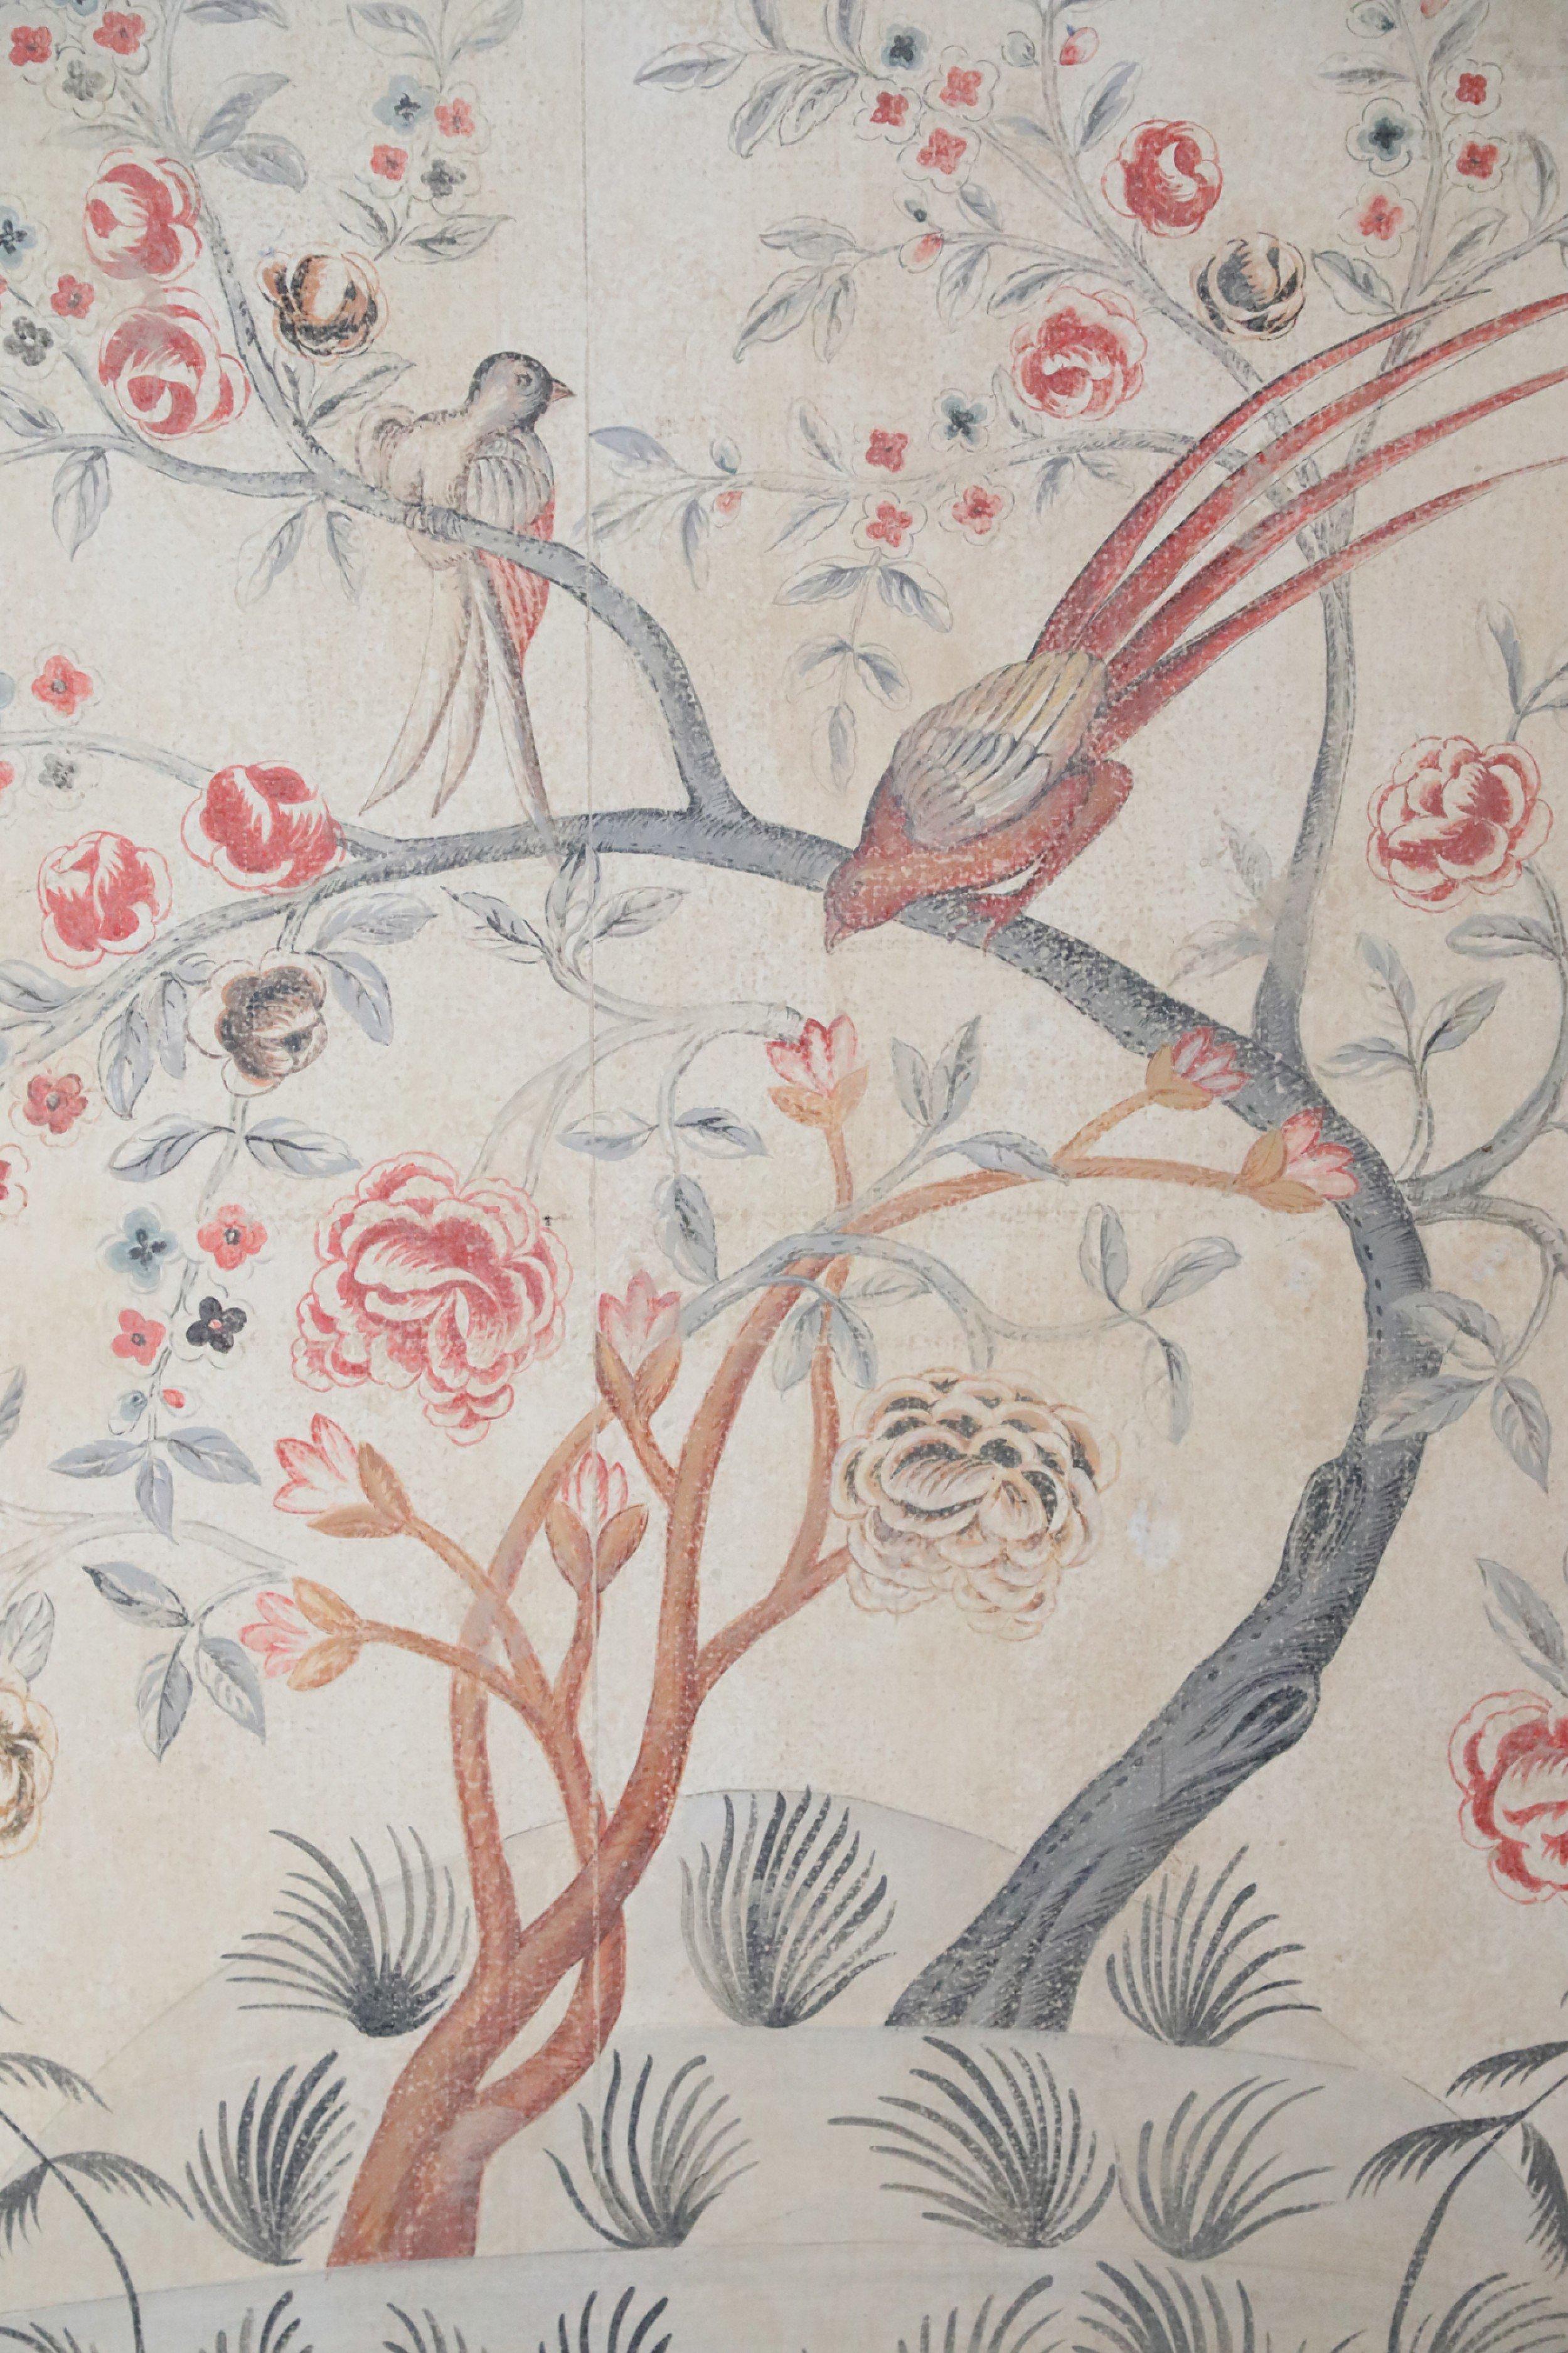 Vintage-Tafel (20. Jh.) mit einem Grund, der antikes Pergament imitiert, und einem Gemälde mit blaugrauen und terakottafarbenen, wellenförmigen Bäumen, die mit Blumen blühen und zwei Vögel beherbergen, von denen einer dramatische rote Federn zeigt.